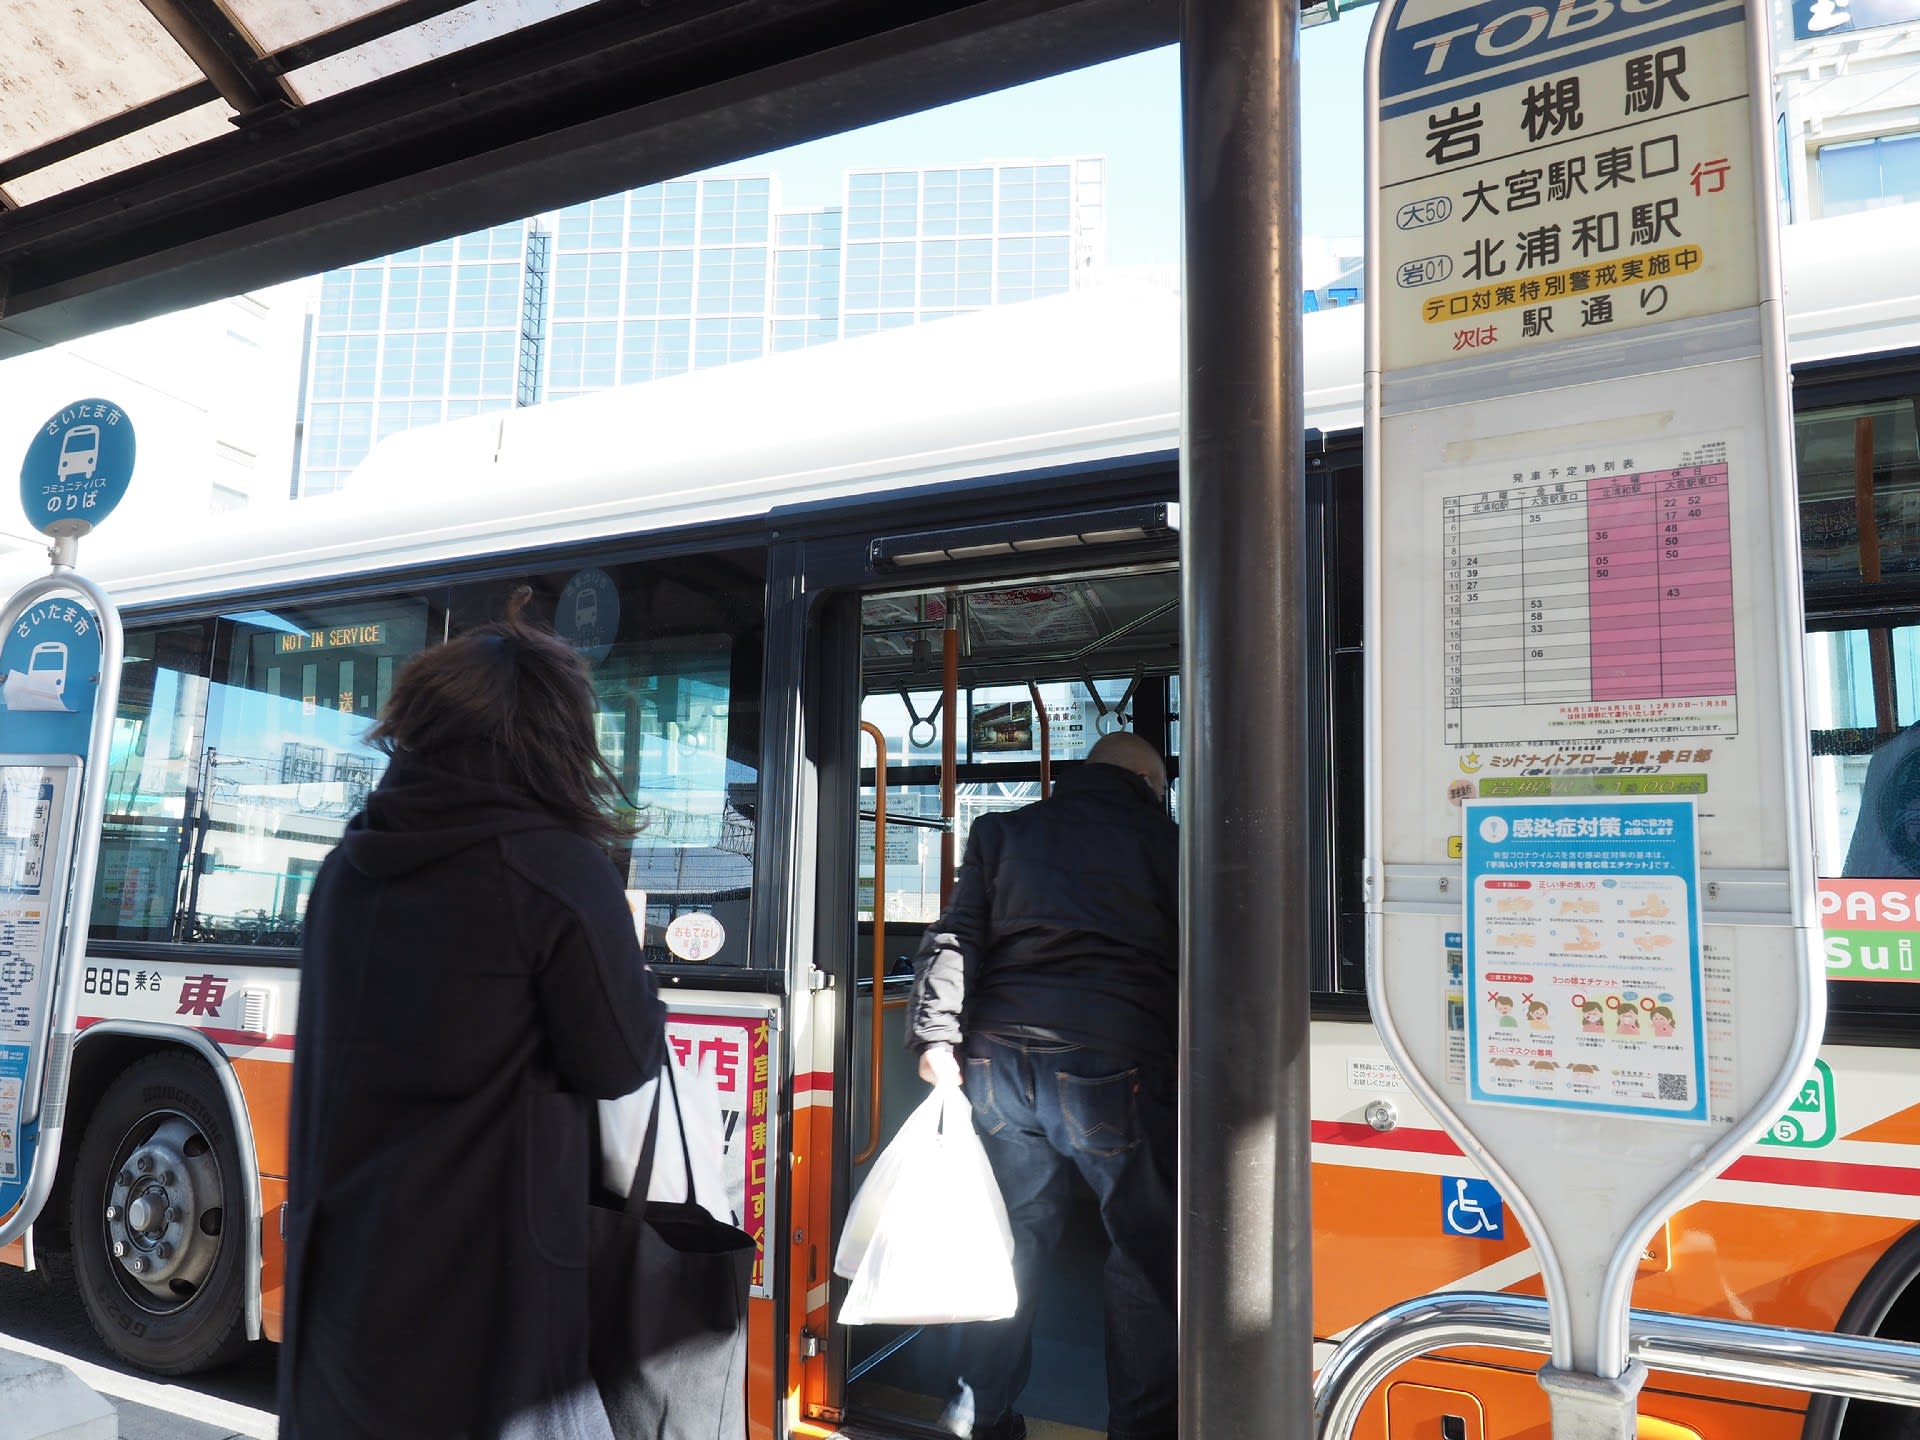 100以上 大宮 ディズニー バス 乗れない 人気の日本の壁紙hdd